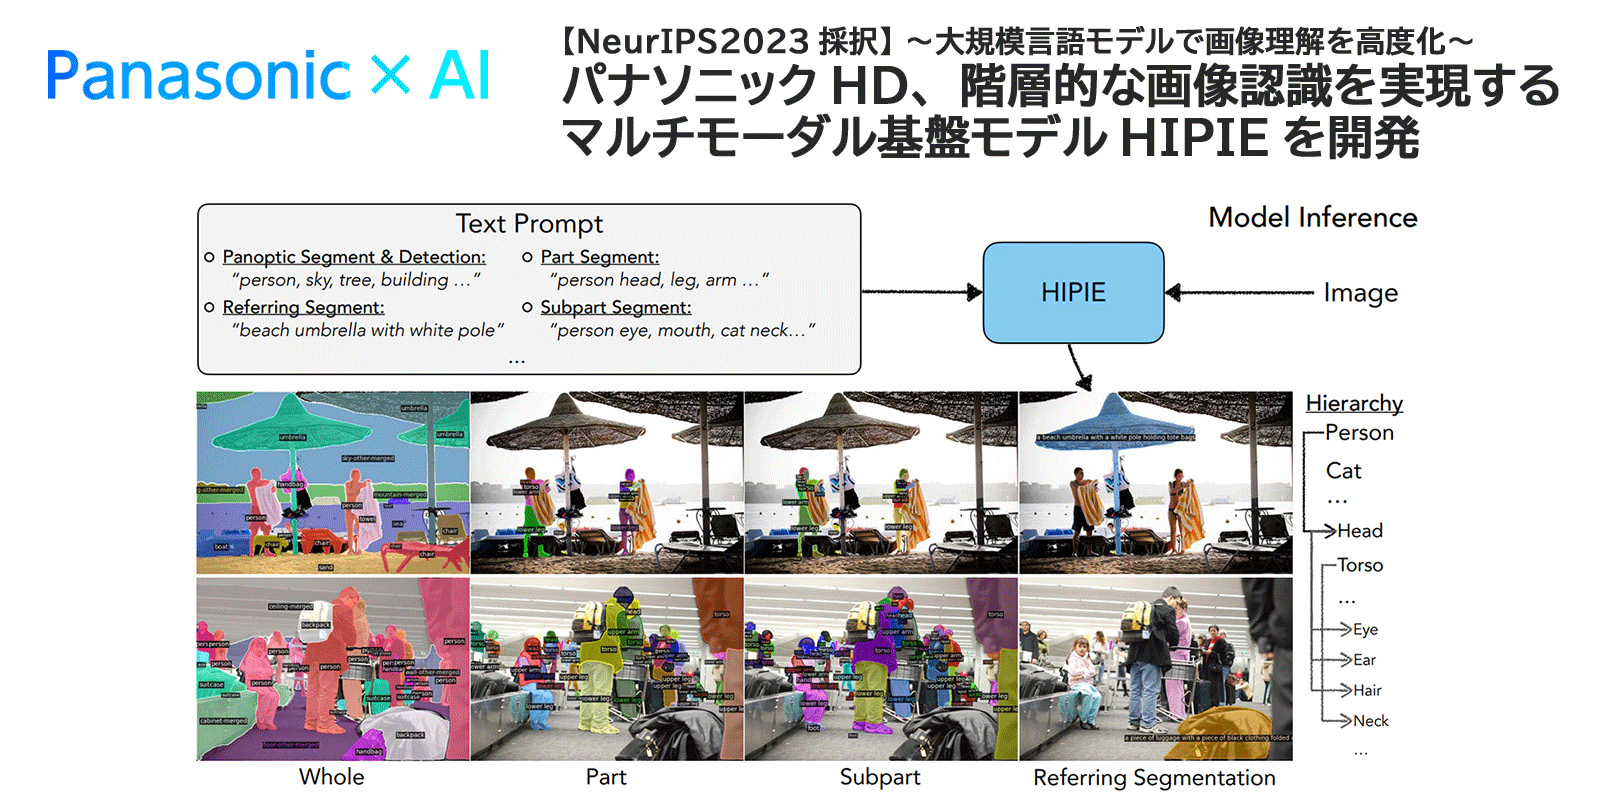 【NeurIPS 2023採択】～大規模言語モデルで画像理解を高度化～パナソニックHD、階層的な画像認識を実現するマルチモーダル基盤HIPIEモデルを開発